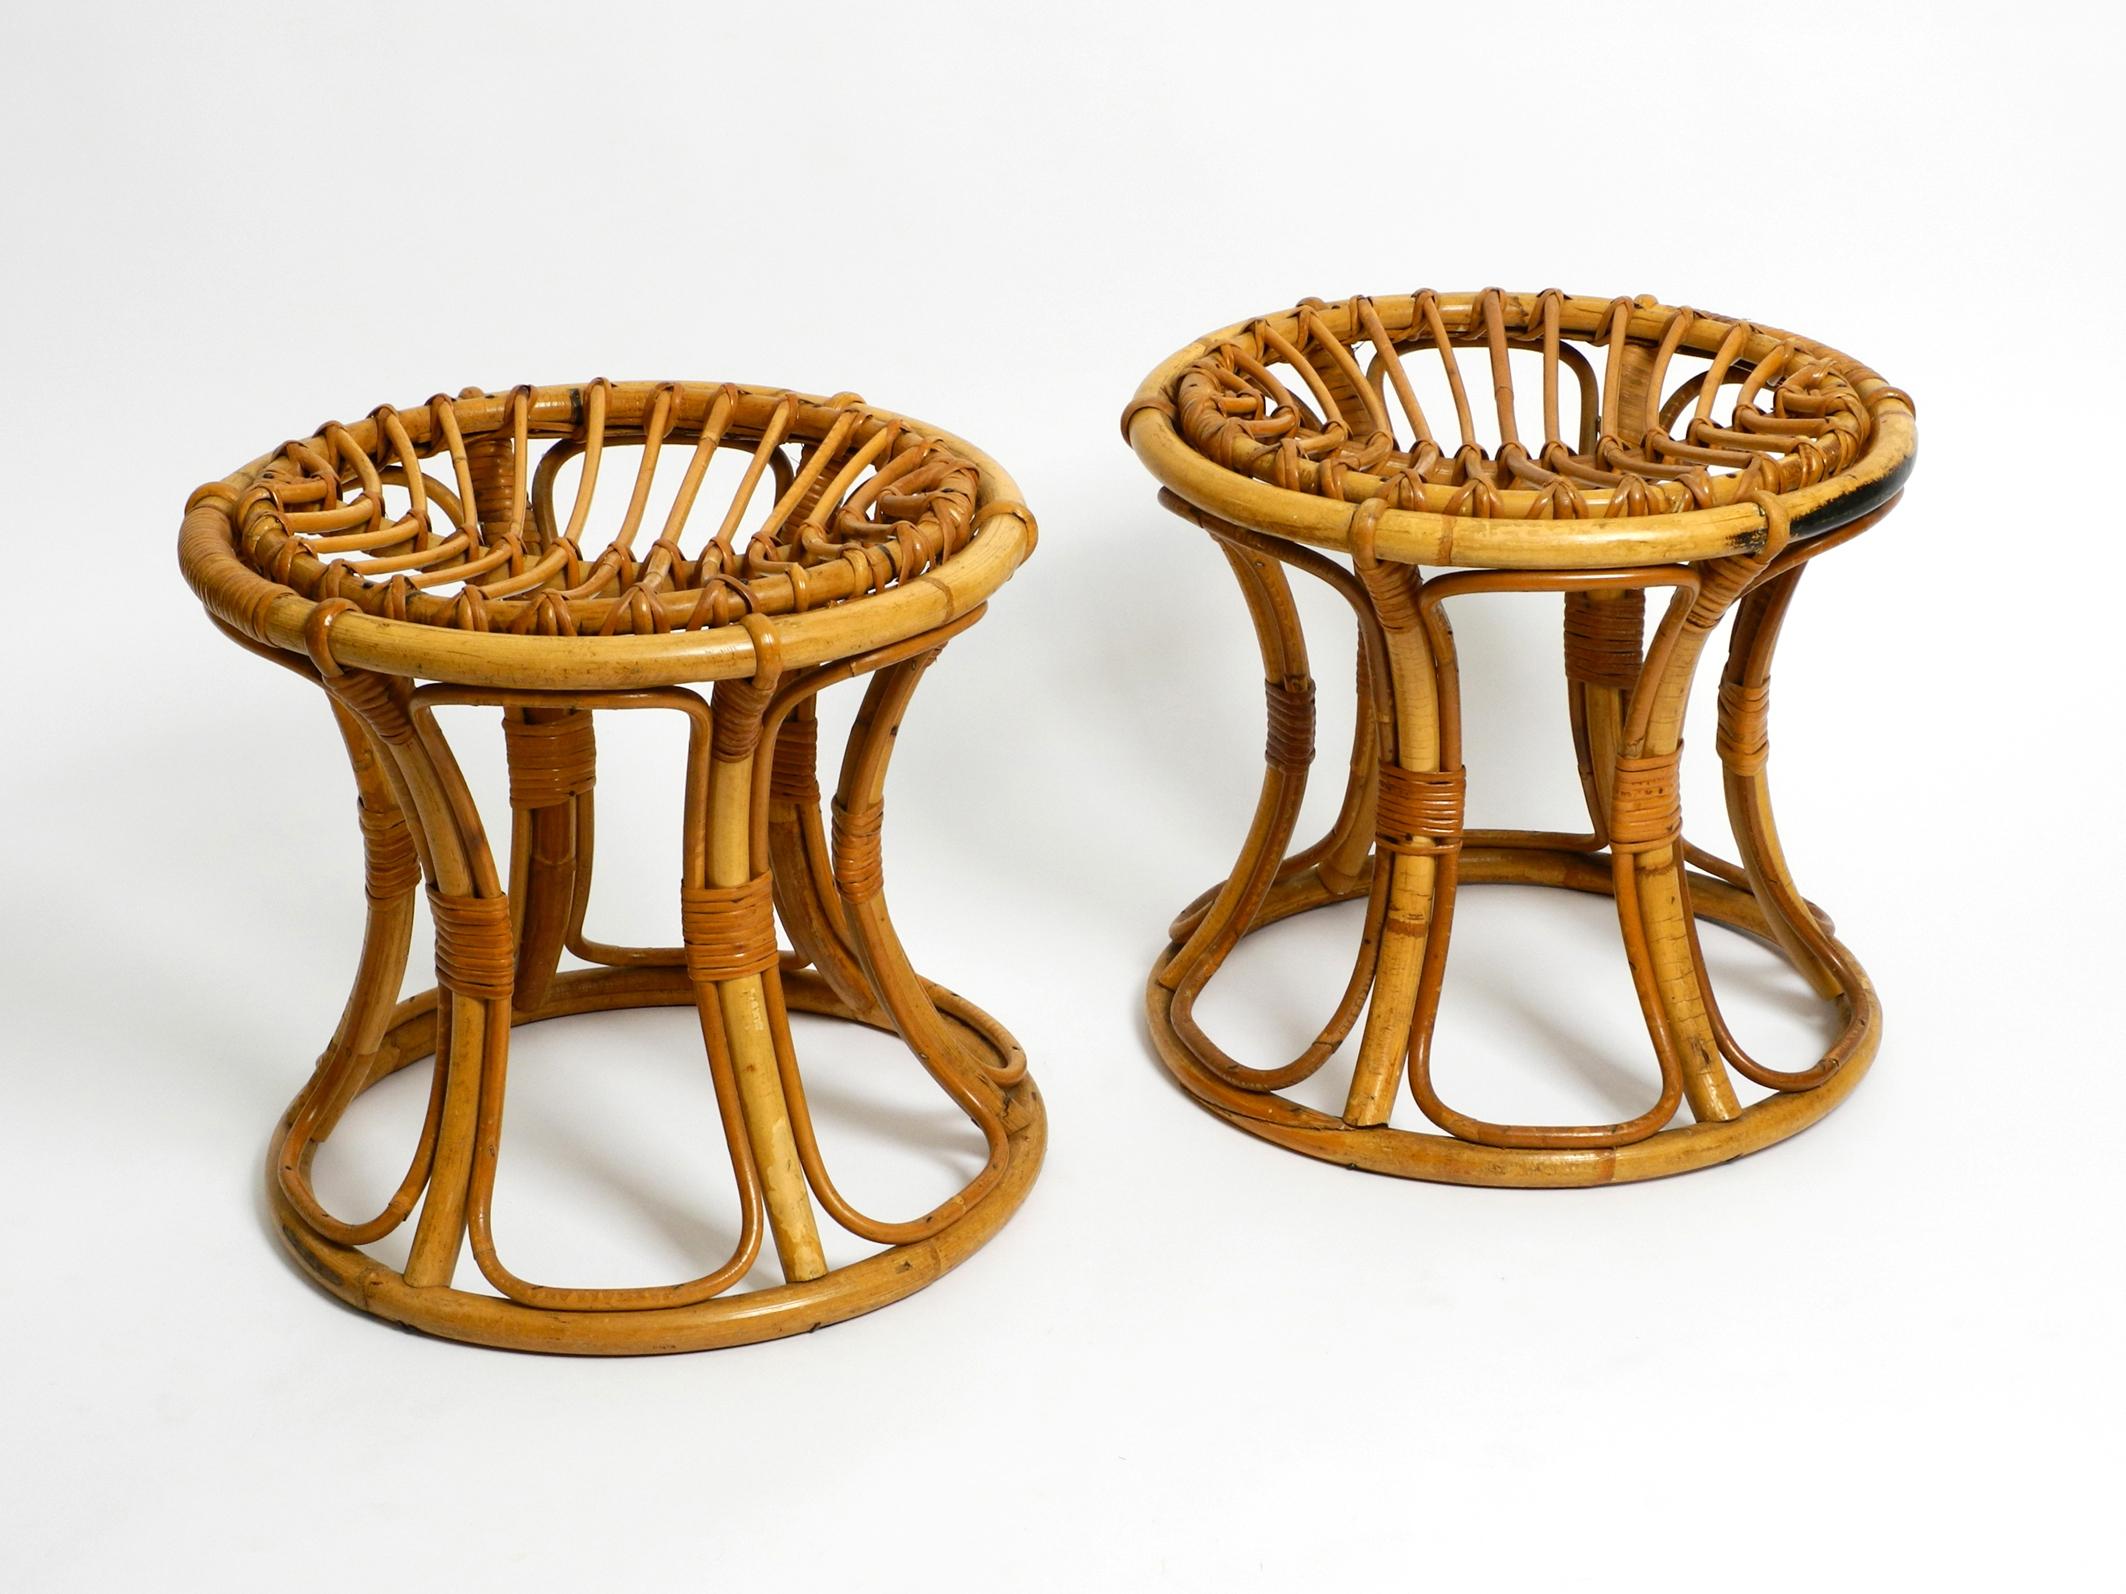 Ein Paar schöner originaler Bambushocker aus den 1960er Jahren. Hergestellt in Italien.
Schönes Design und sehr bequem zu sitzen.
In einem sehr aufwendigen Verfahren vollständig aus Bambus hergestellt.
Sehr guter Designklassiker mit hohem